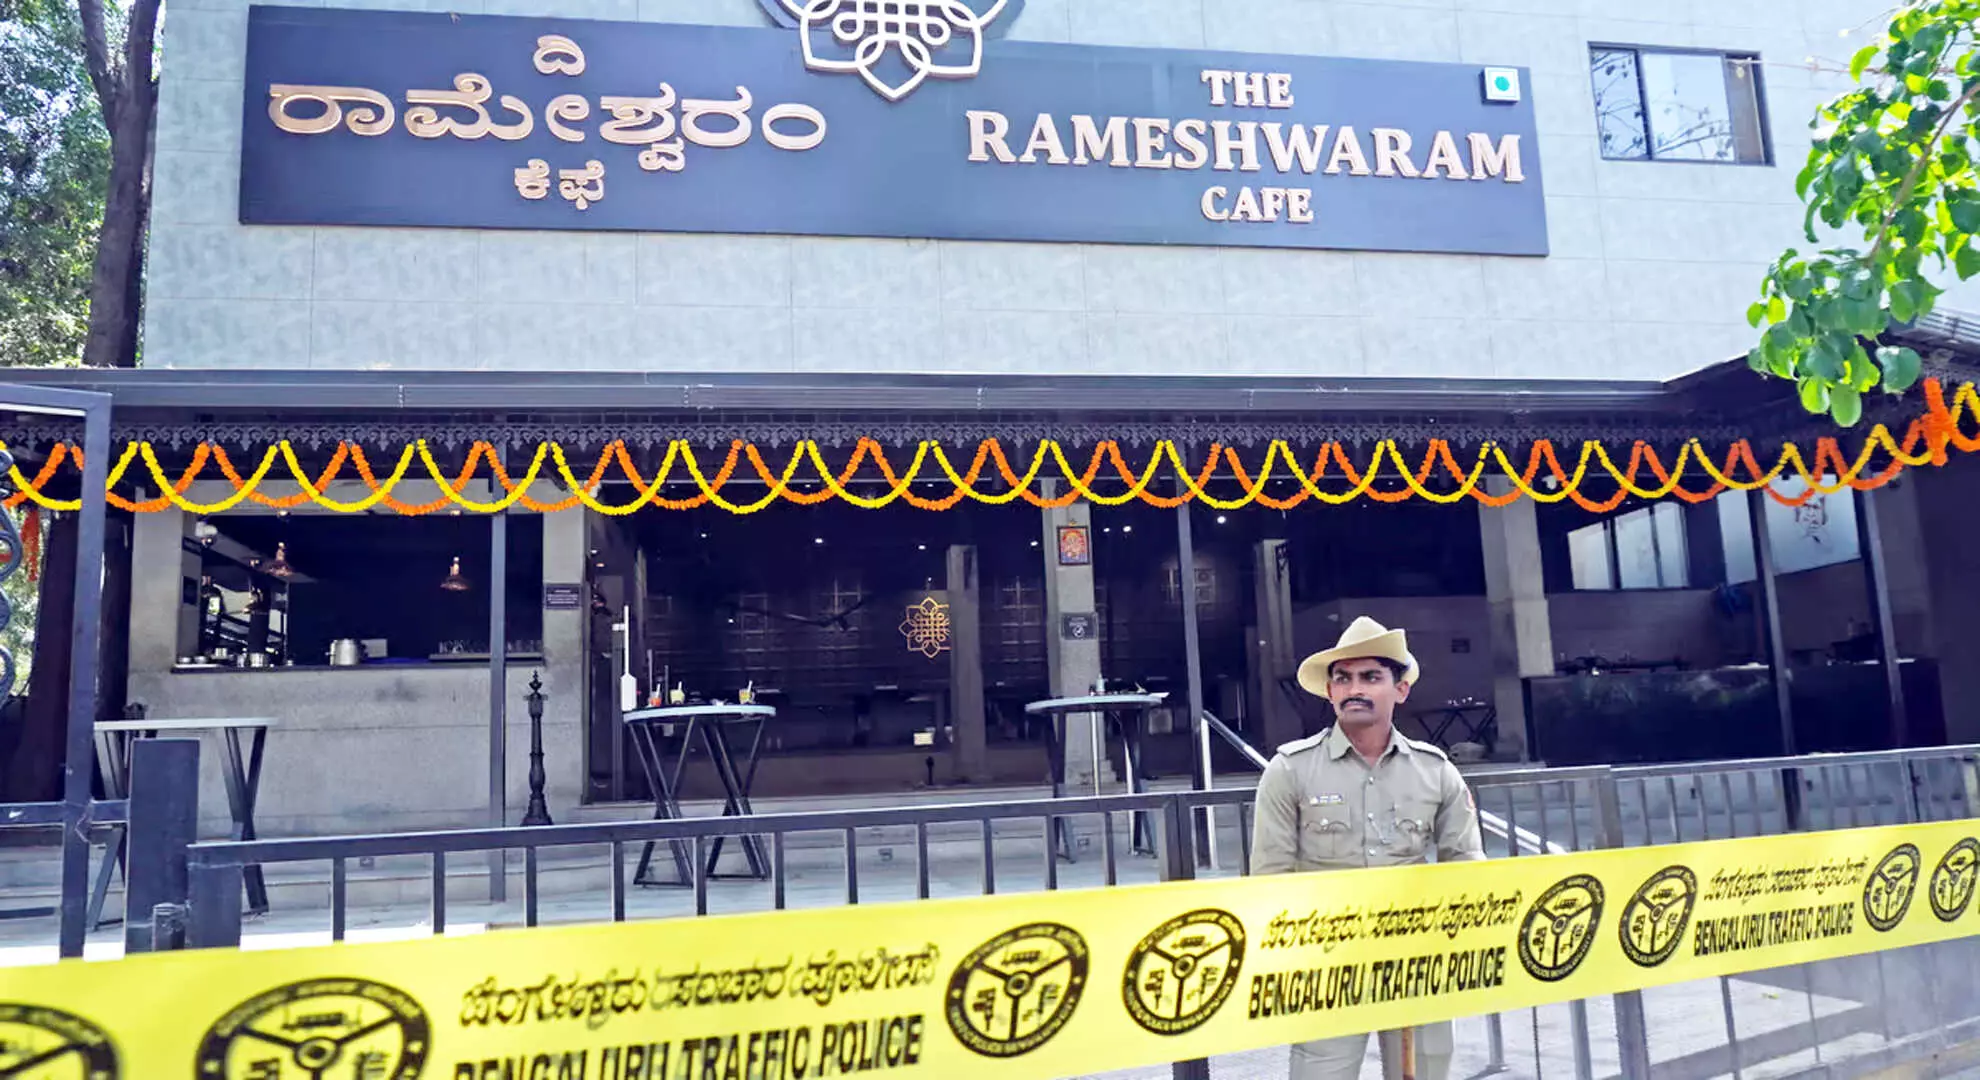 कृष्णागिरी जंगल में प्रशिक्षण प्राप्त करने वाले रामेश्वरम कैफे हमलावर के बारे में कोई इनपुट या जानकारी नहीं: टीएन पुलिस